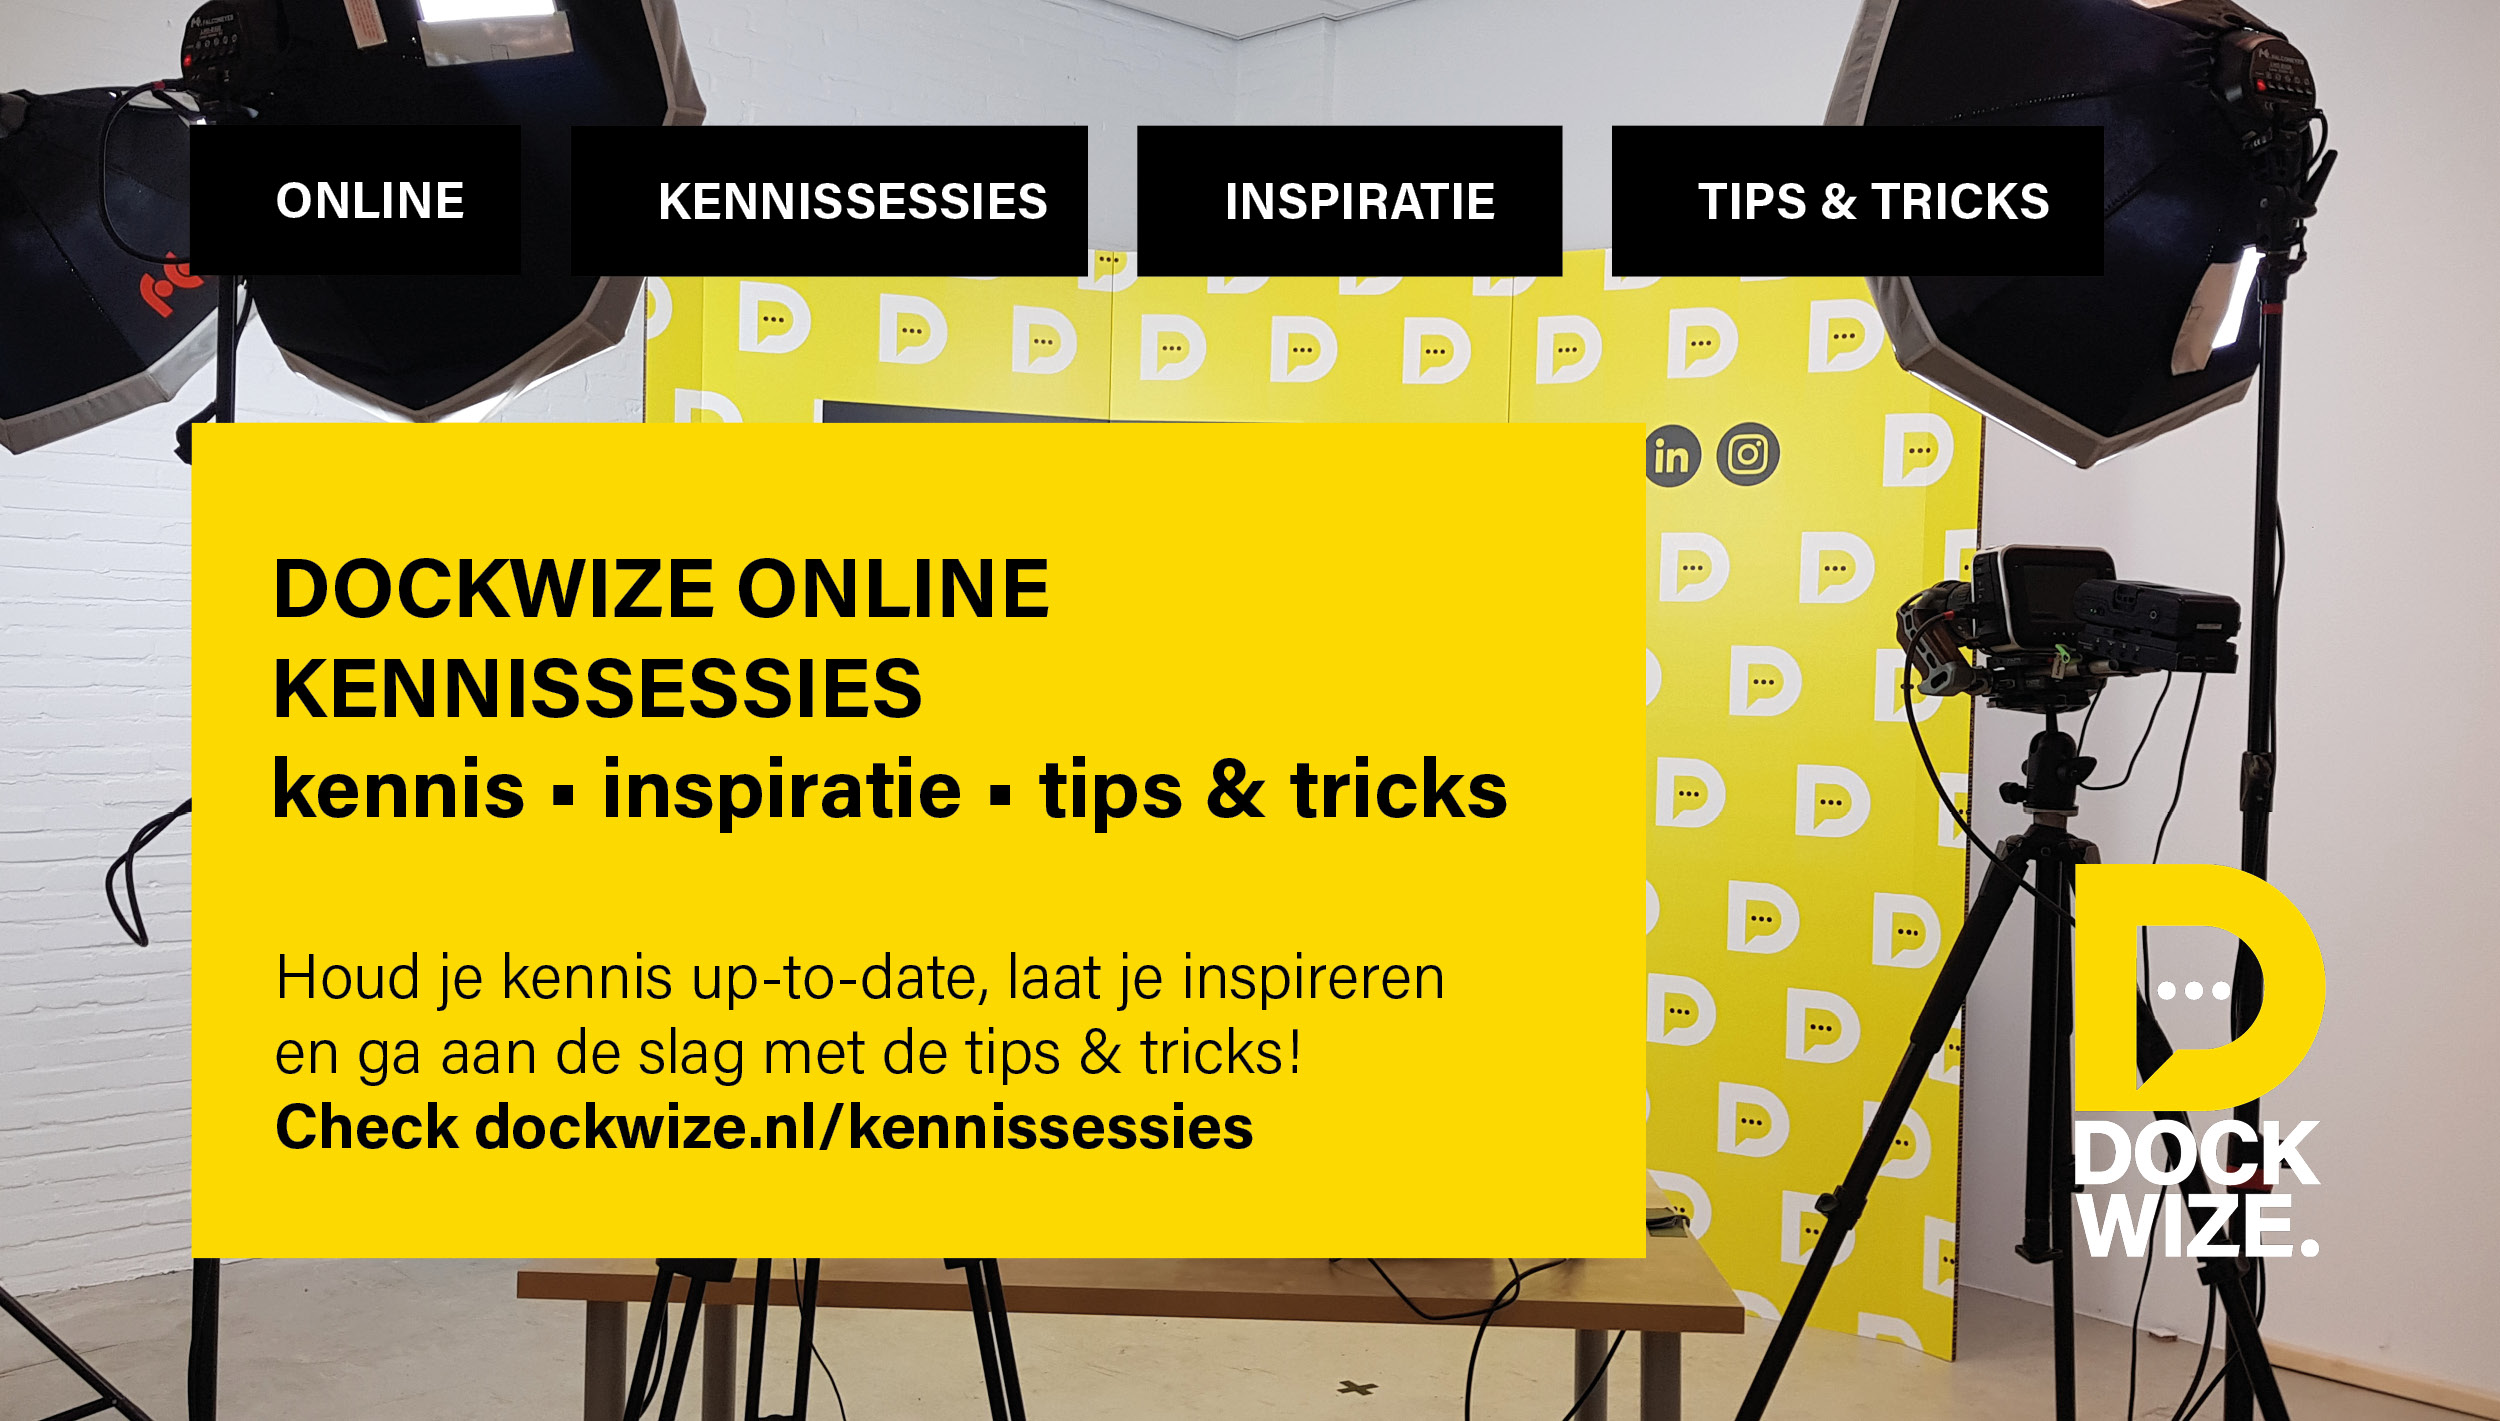 Dockwize online kennissessies kennis inspiratie tips en tricks